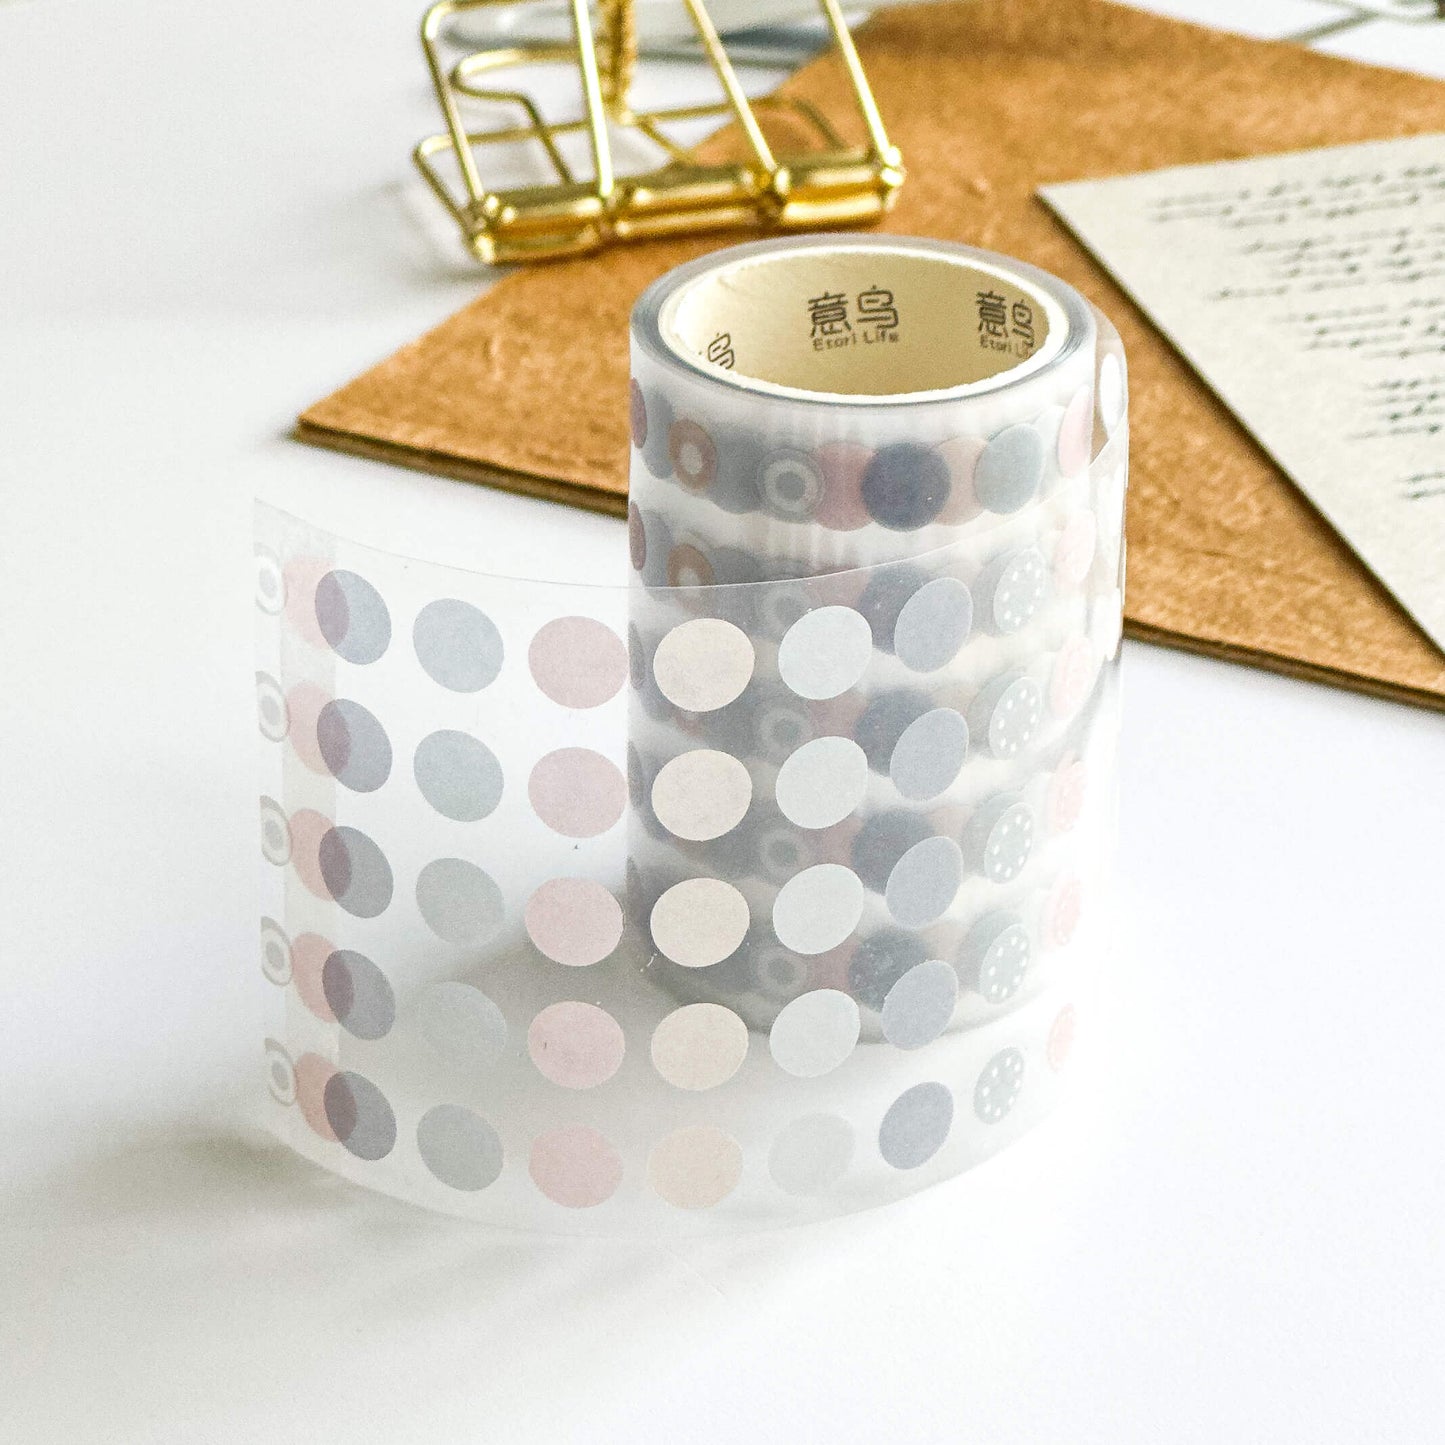 Washi dot sticker roll - Soft hues